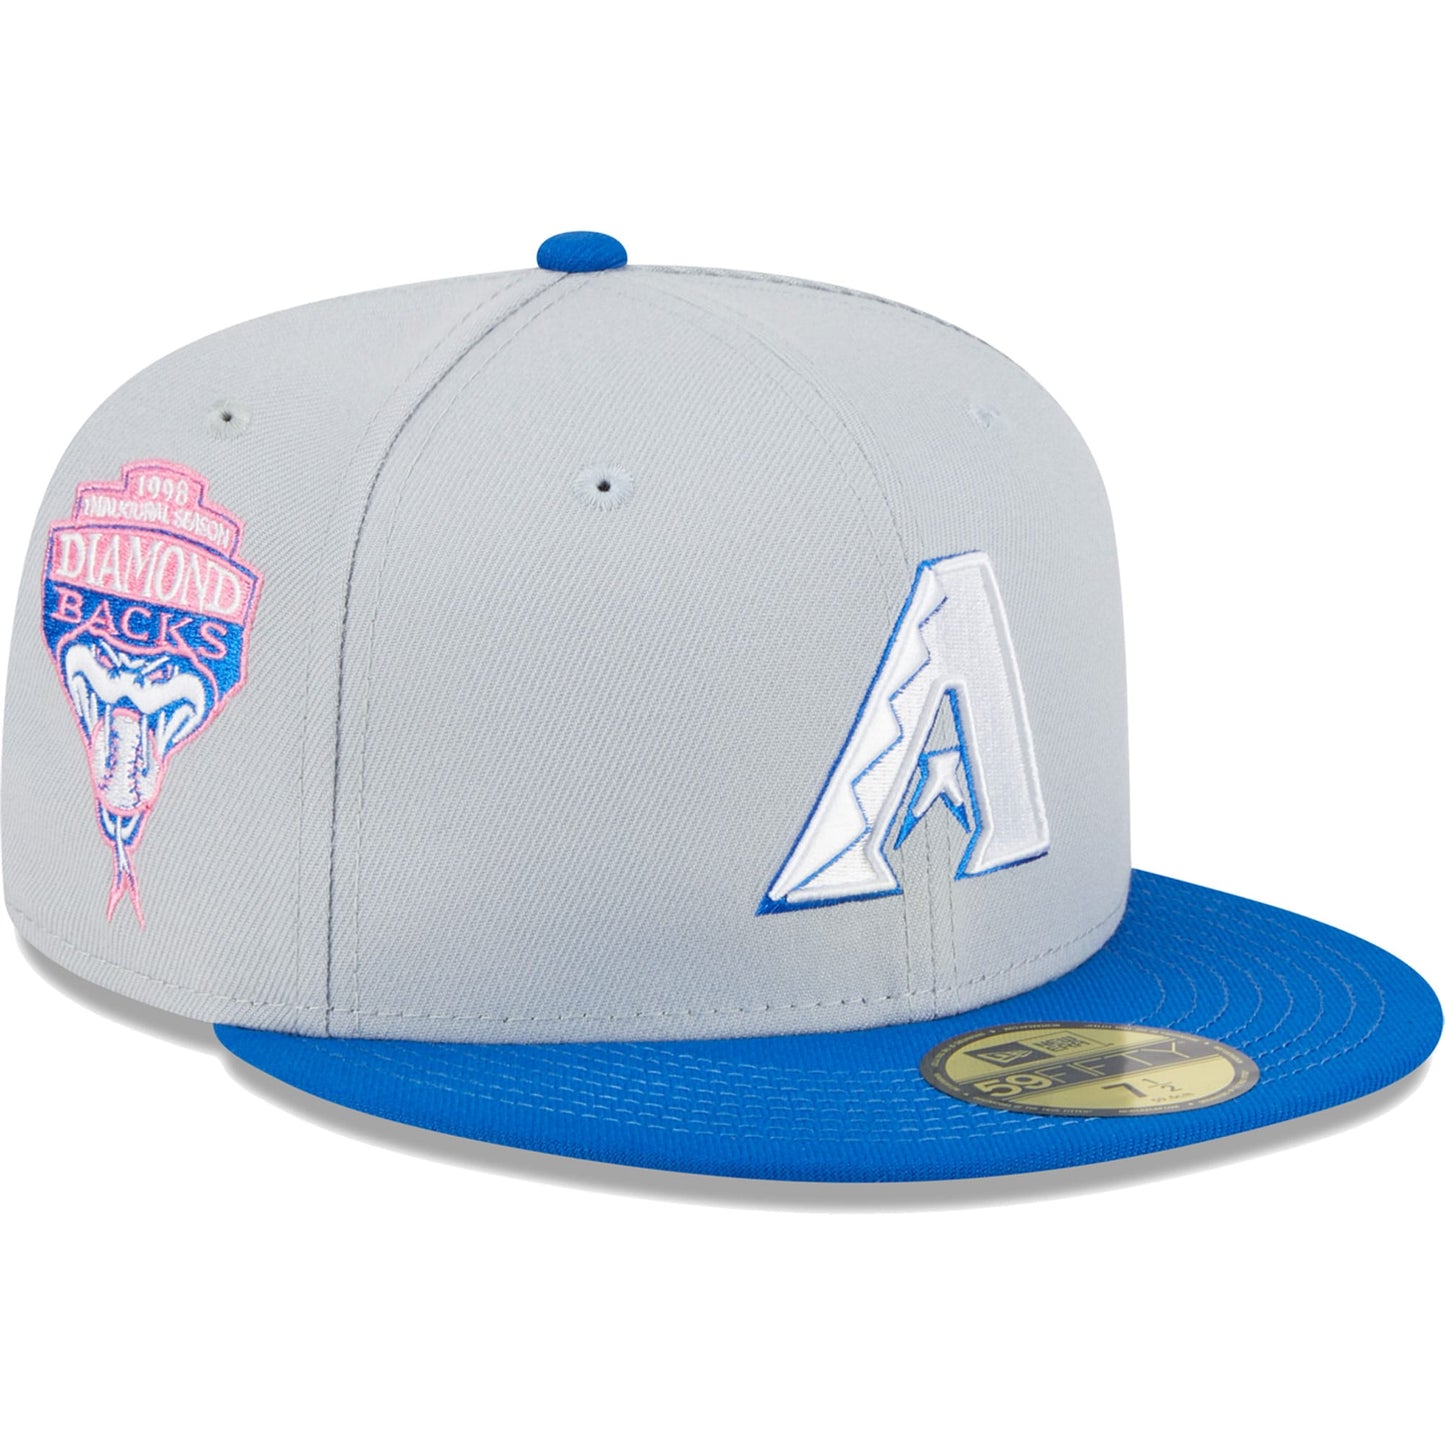 Arizona Diamondbacks New Era Dolphin 59FIFTY Fitted Hat - Gray/Blue